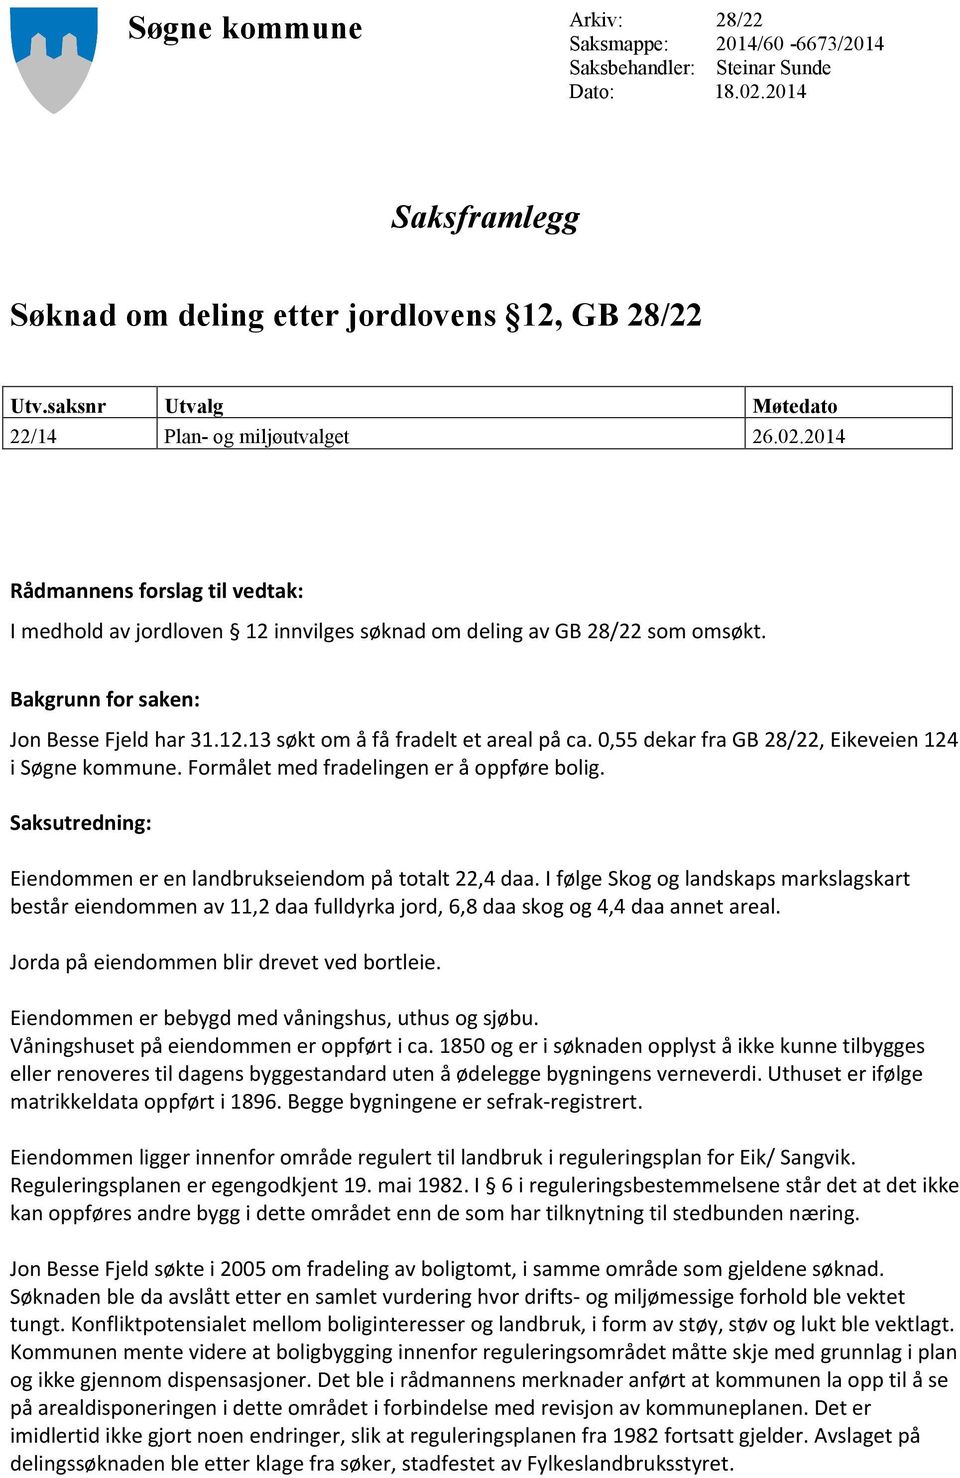 Bakgrunn for saken: Jon Besse Fjeld har 31.12.13 søkt om å få fradelt et areal på ca. 0,55 dekar fra GB 28/22, Eikeveien 124 i Søgne kommune. Formålet med fradelingen er å oppføre bolig.